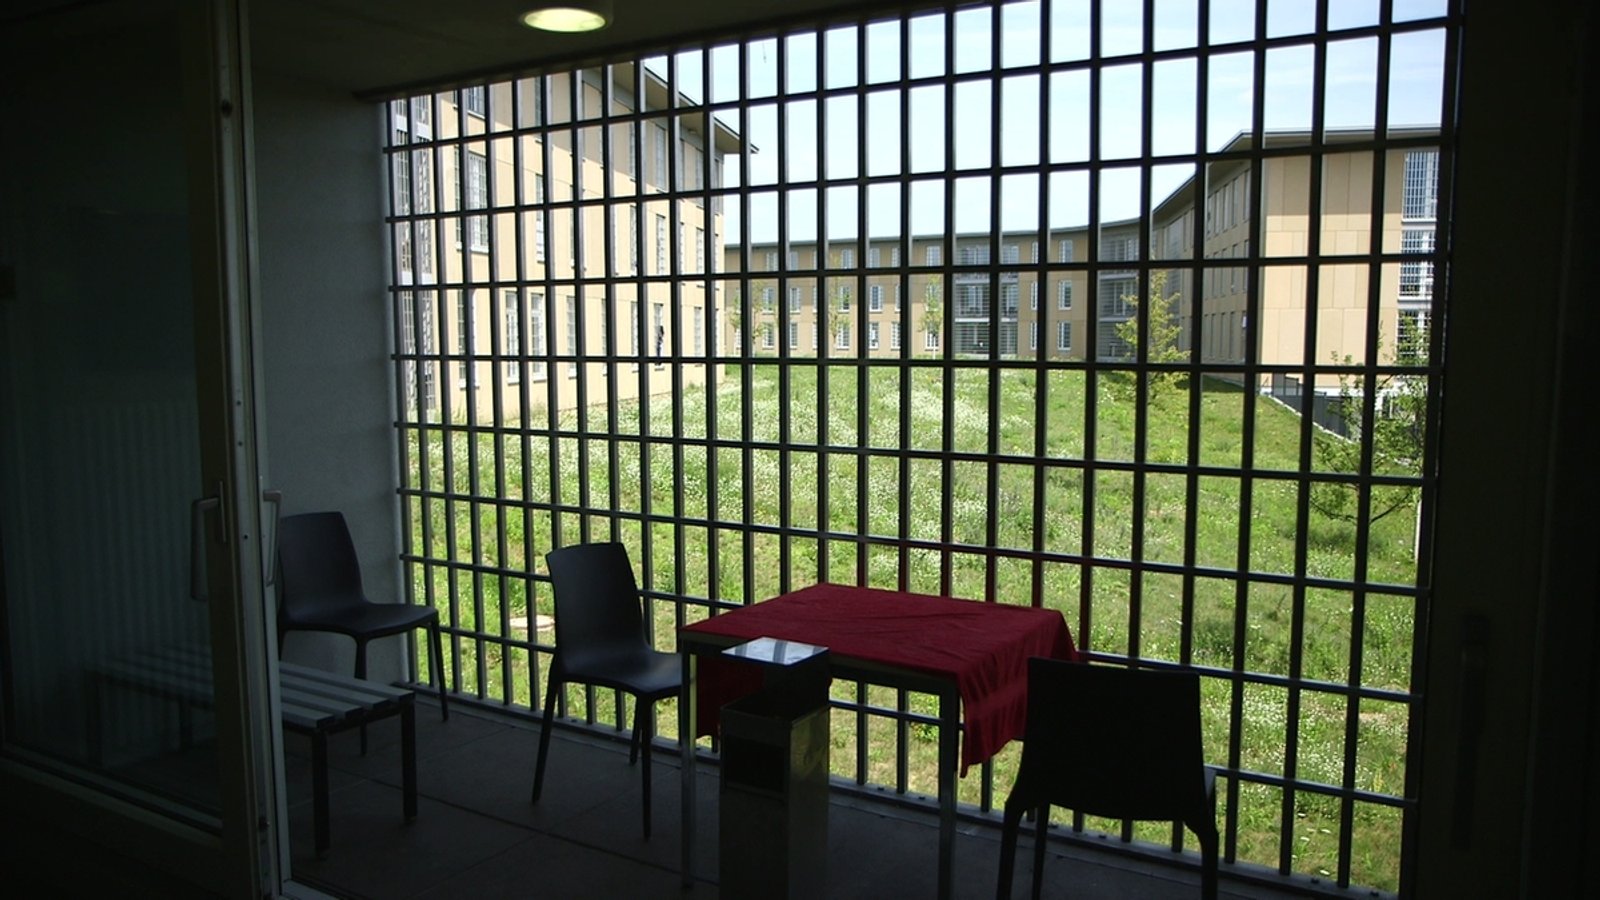 Ausnahmezustand in deutschen Gefängnissen, Teil 2